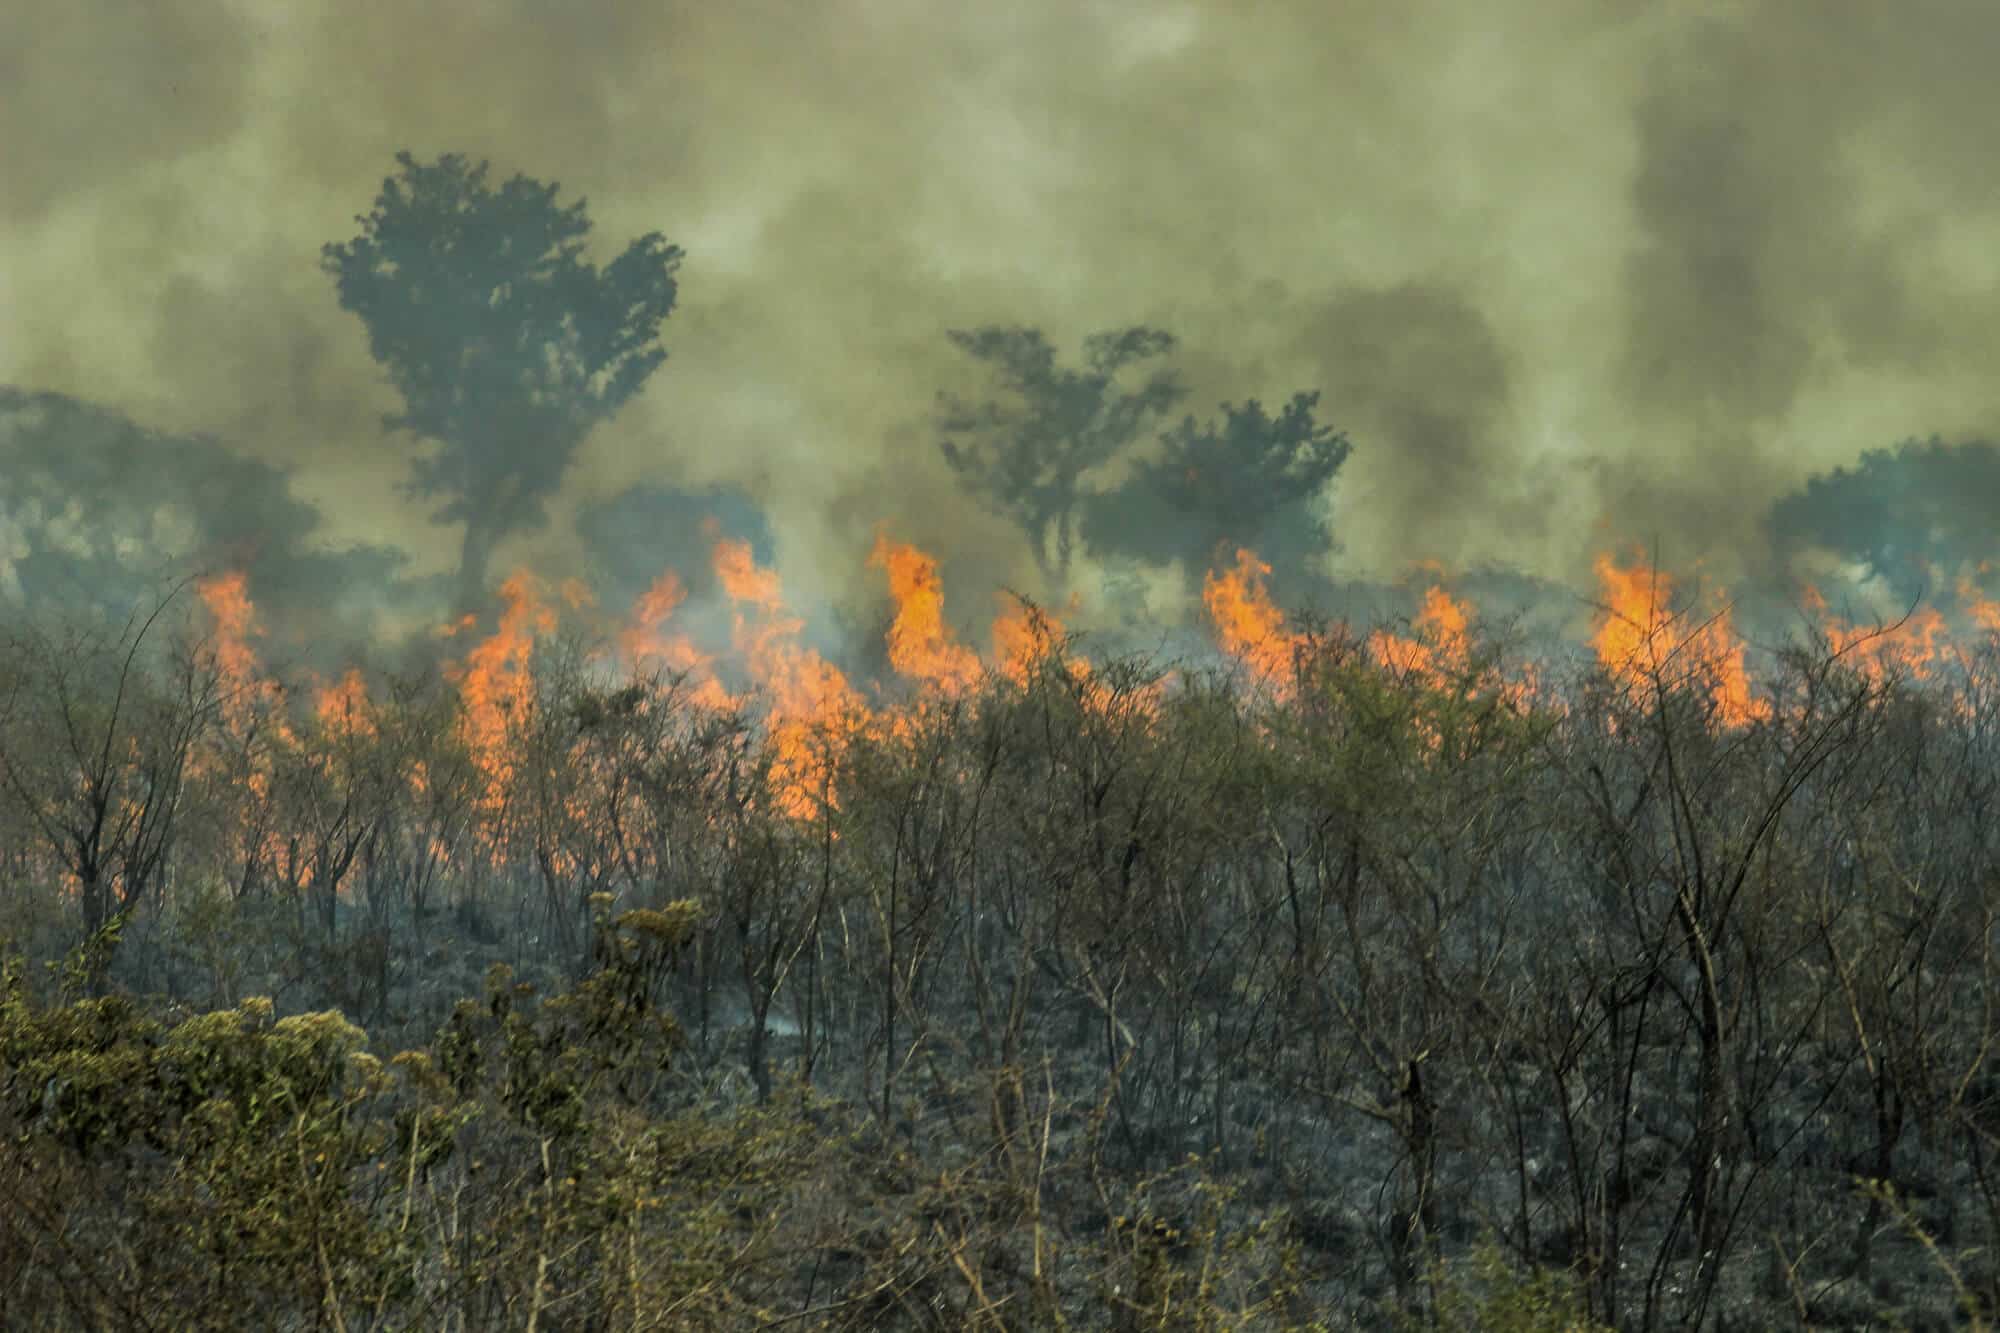 שריפות ביער הגשם באמזונס. <a href="https://depositphotos.com. ">איור: depositphotos.com</a>